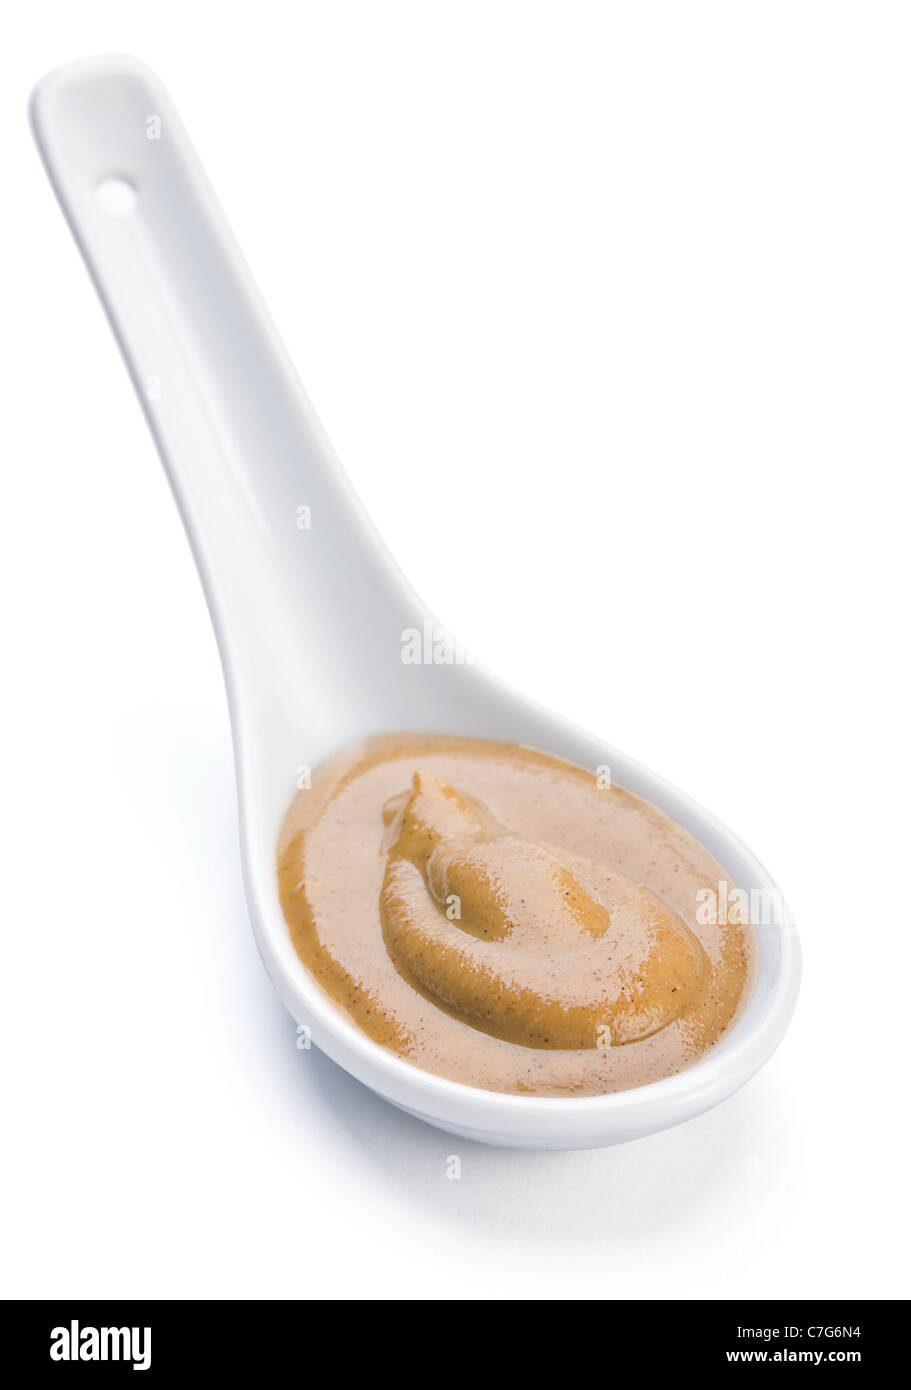 Jaune moutarde sauce en cuillère en céramique sur blanc Banque D'Images